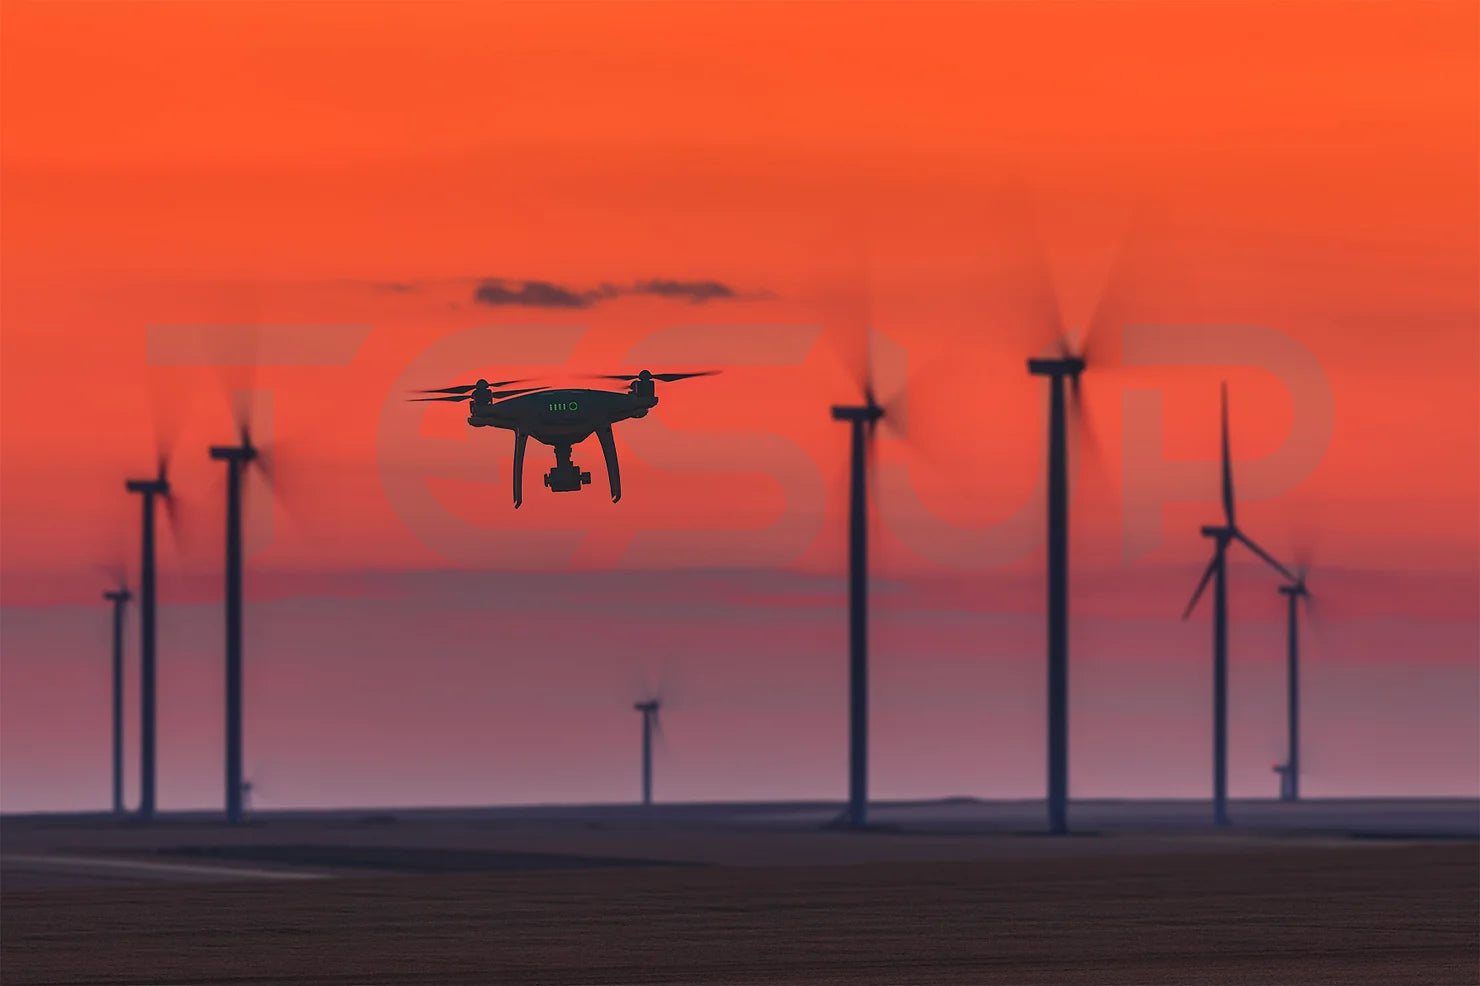 La nuova tecnologia nel settore energetico: le registrazioni termiche dei droni